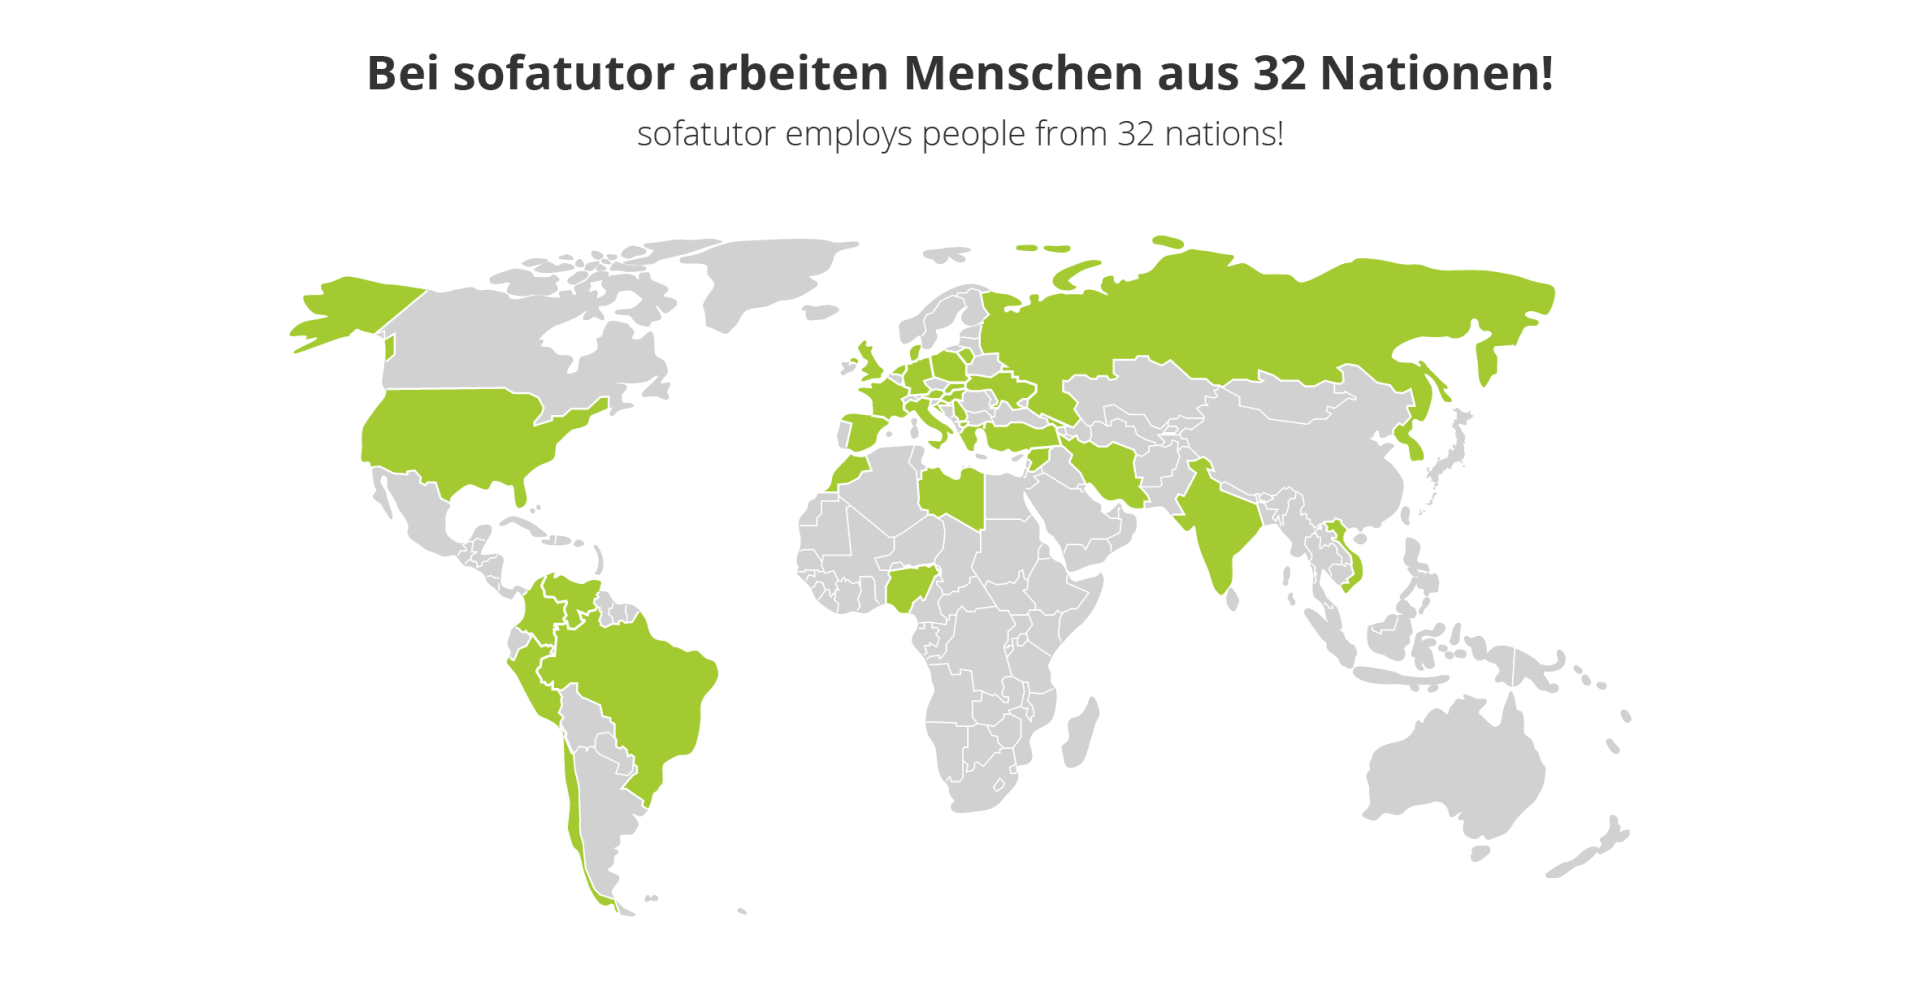 sofatutor employees around the world